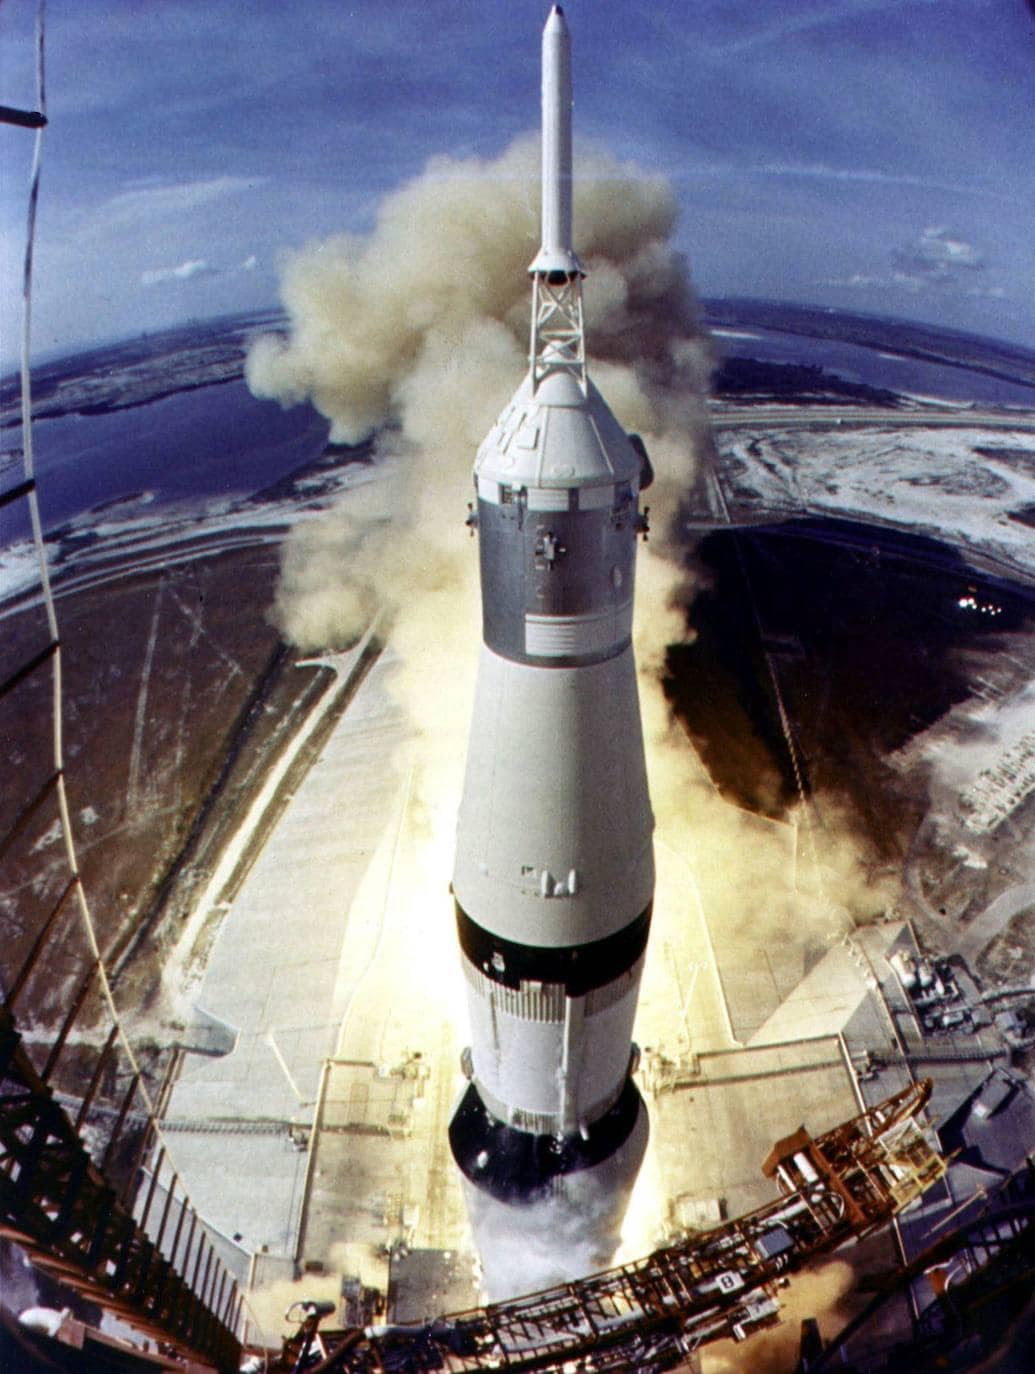 Foto de archivo del 16 de julio de 1969 publicada por la NASA. Muestra el cohete Saturno V despegando de la plataforma de lanzamiento 39A en el Centro Espacial Kennedy al comienzo de la misión de aterrizaje lunar del Apolo 11. Los astronautas Neil Armstrong, Edwin E. "Buzz" Aldrin, Jr. y Michael Collins despegaron para ser los primeros hombres en la misión a la Luna. 